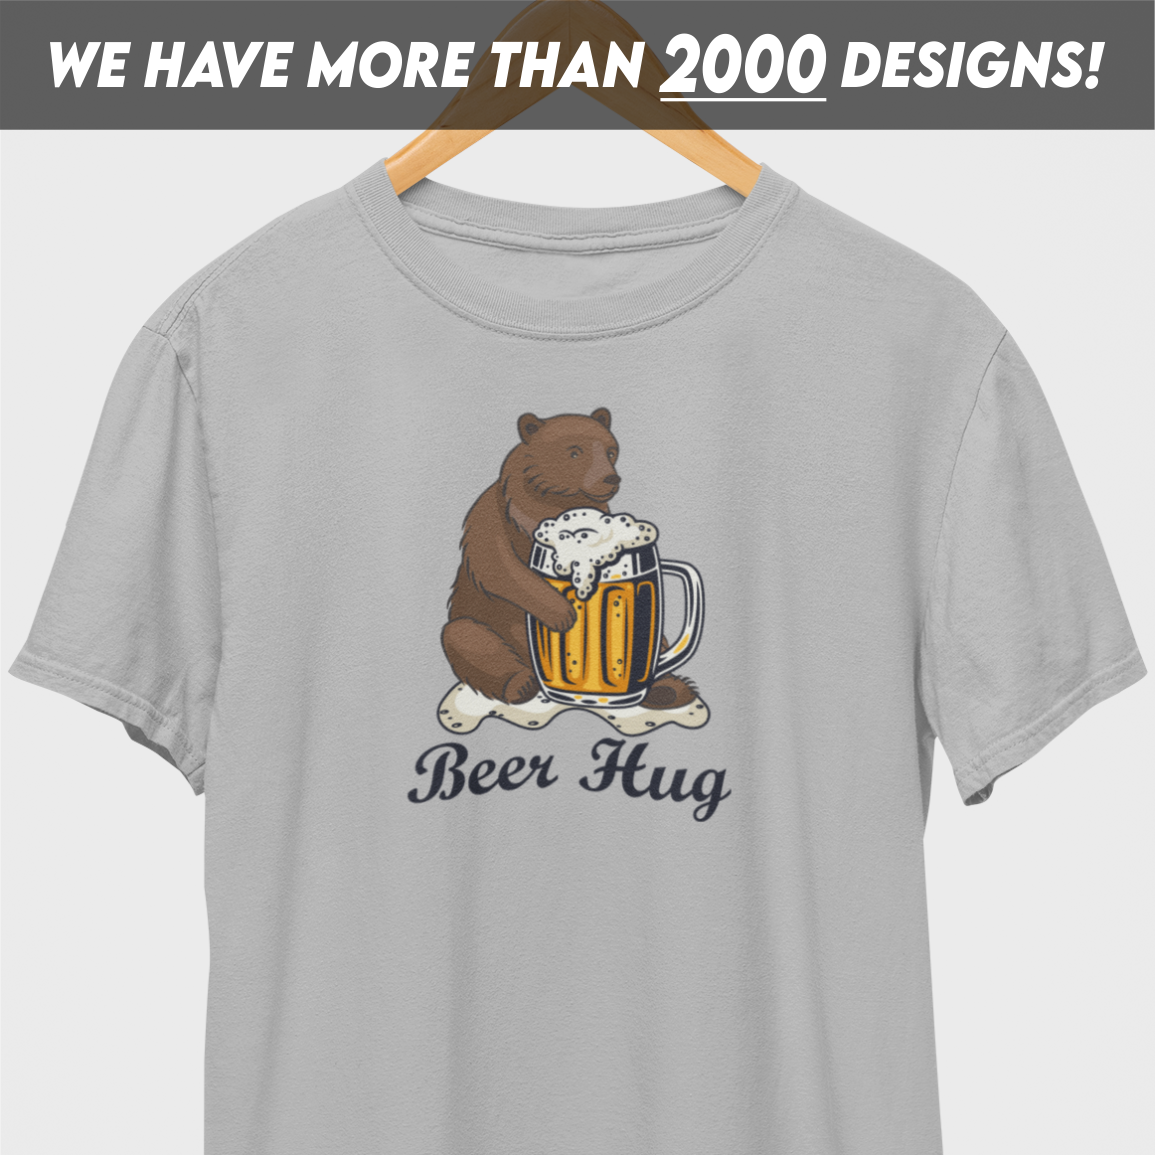 Beer Hug T-Shirt